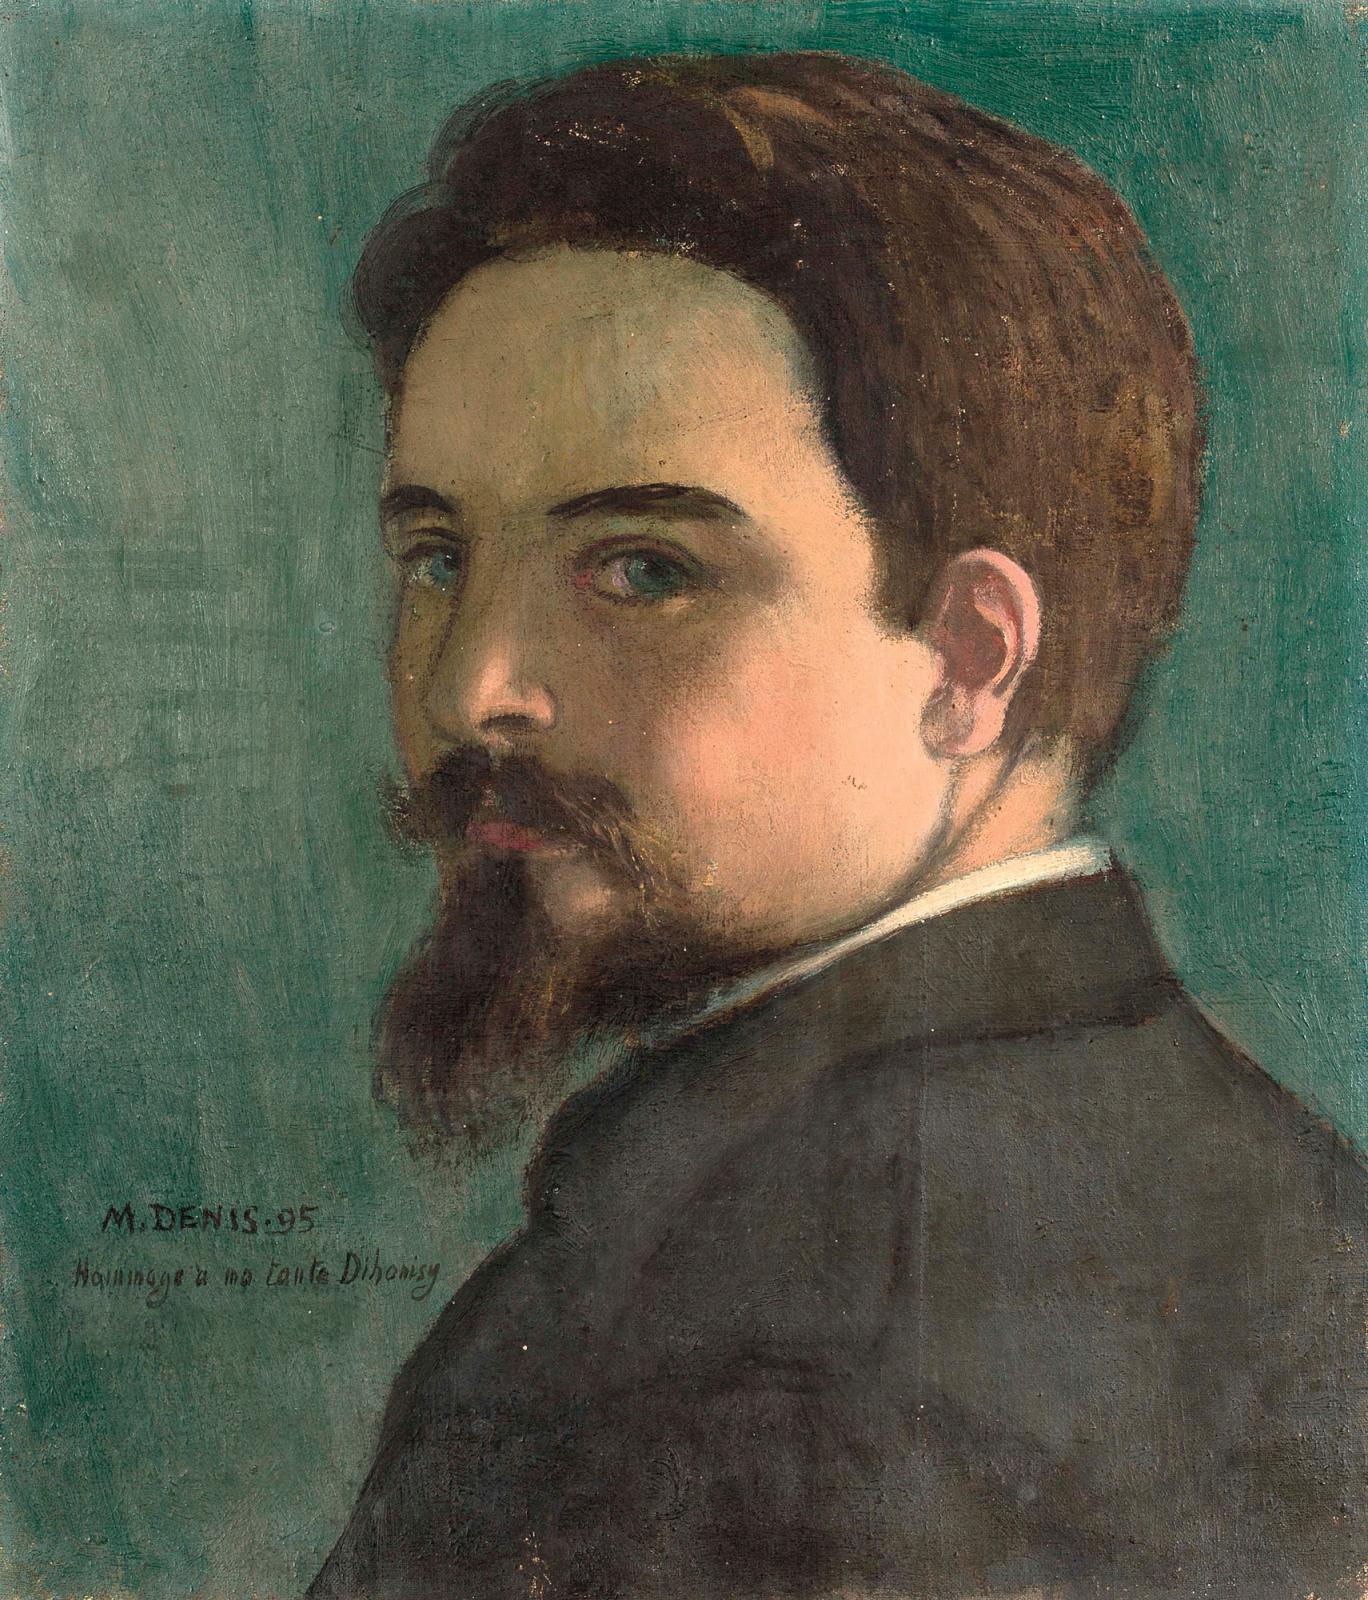 Maurice Denis (1870-1943), Portrait du peintre par lui-même à 24 ans, 1895, huile sur toile, datée et dédicacée «Hommage à ma tante Dihoni